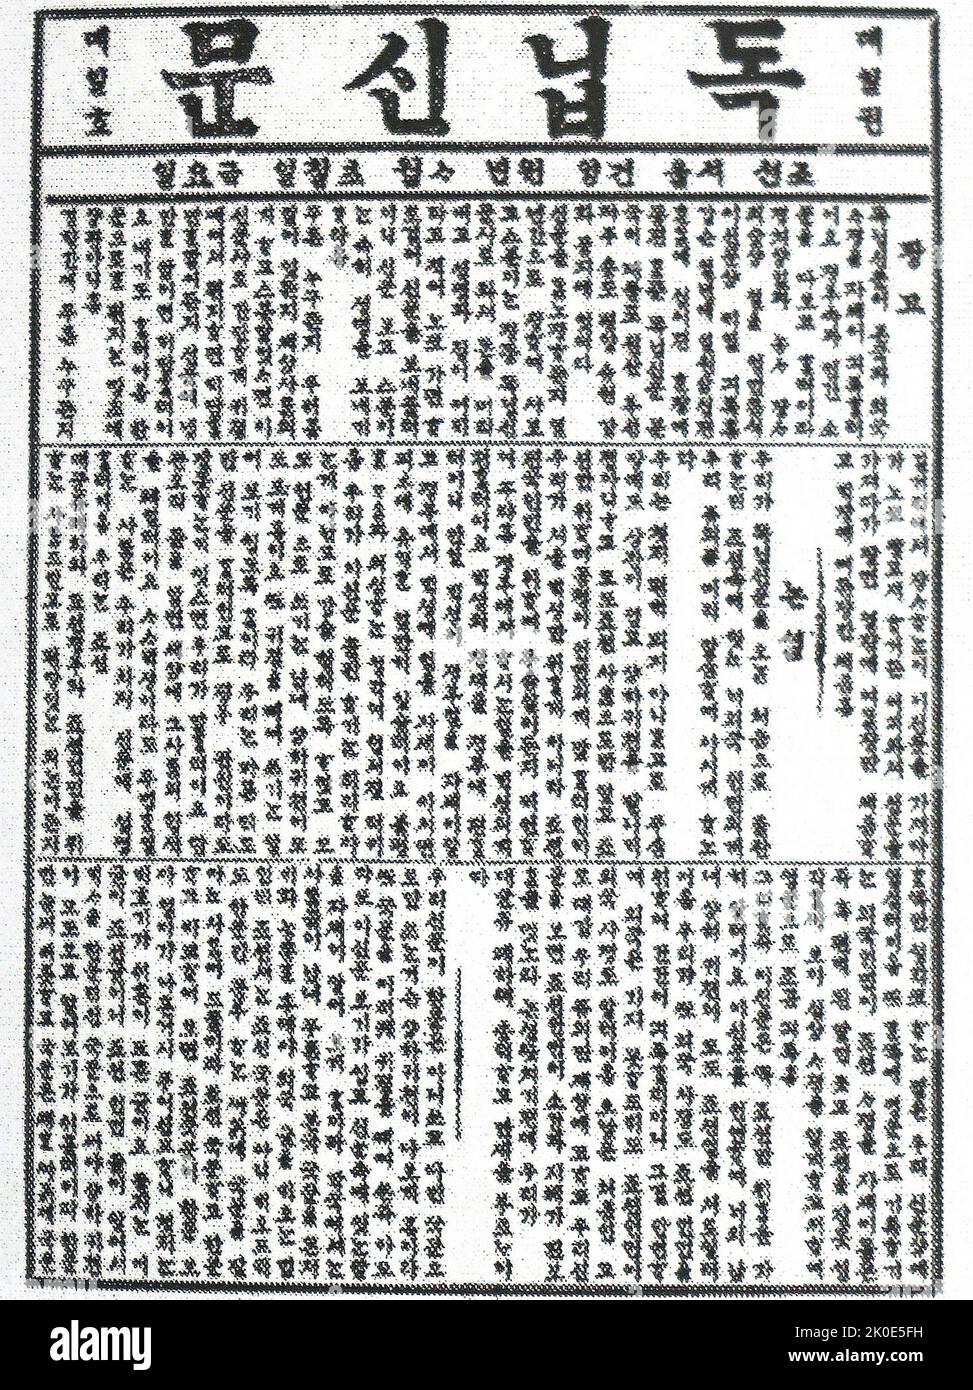 Première édition du journal indépendant ou Tongnip Sinmun (1896-1899), ancien journal coréen. Tongnip Sinmun a été le premier quotidien moderne géré par des particuliers en Corée. Elle a été fondée en juillet 1896 par un membre de l'intelligentsia coréenne éclairée, Seo Jae-pil. Banque D'Images